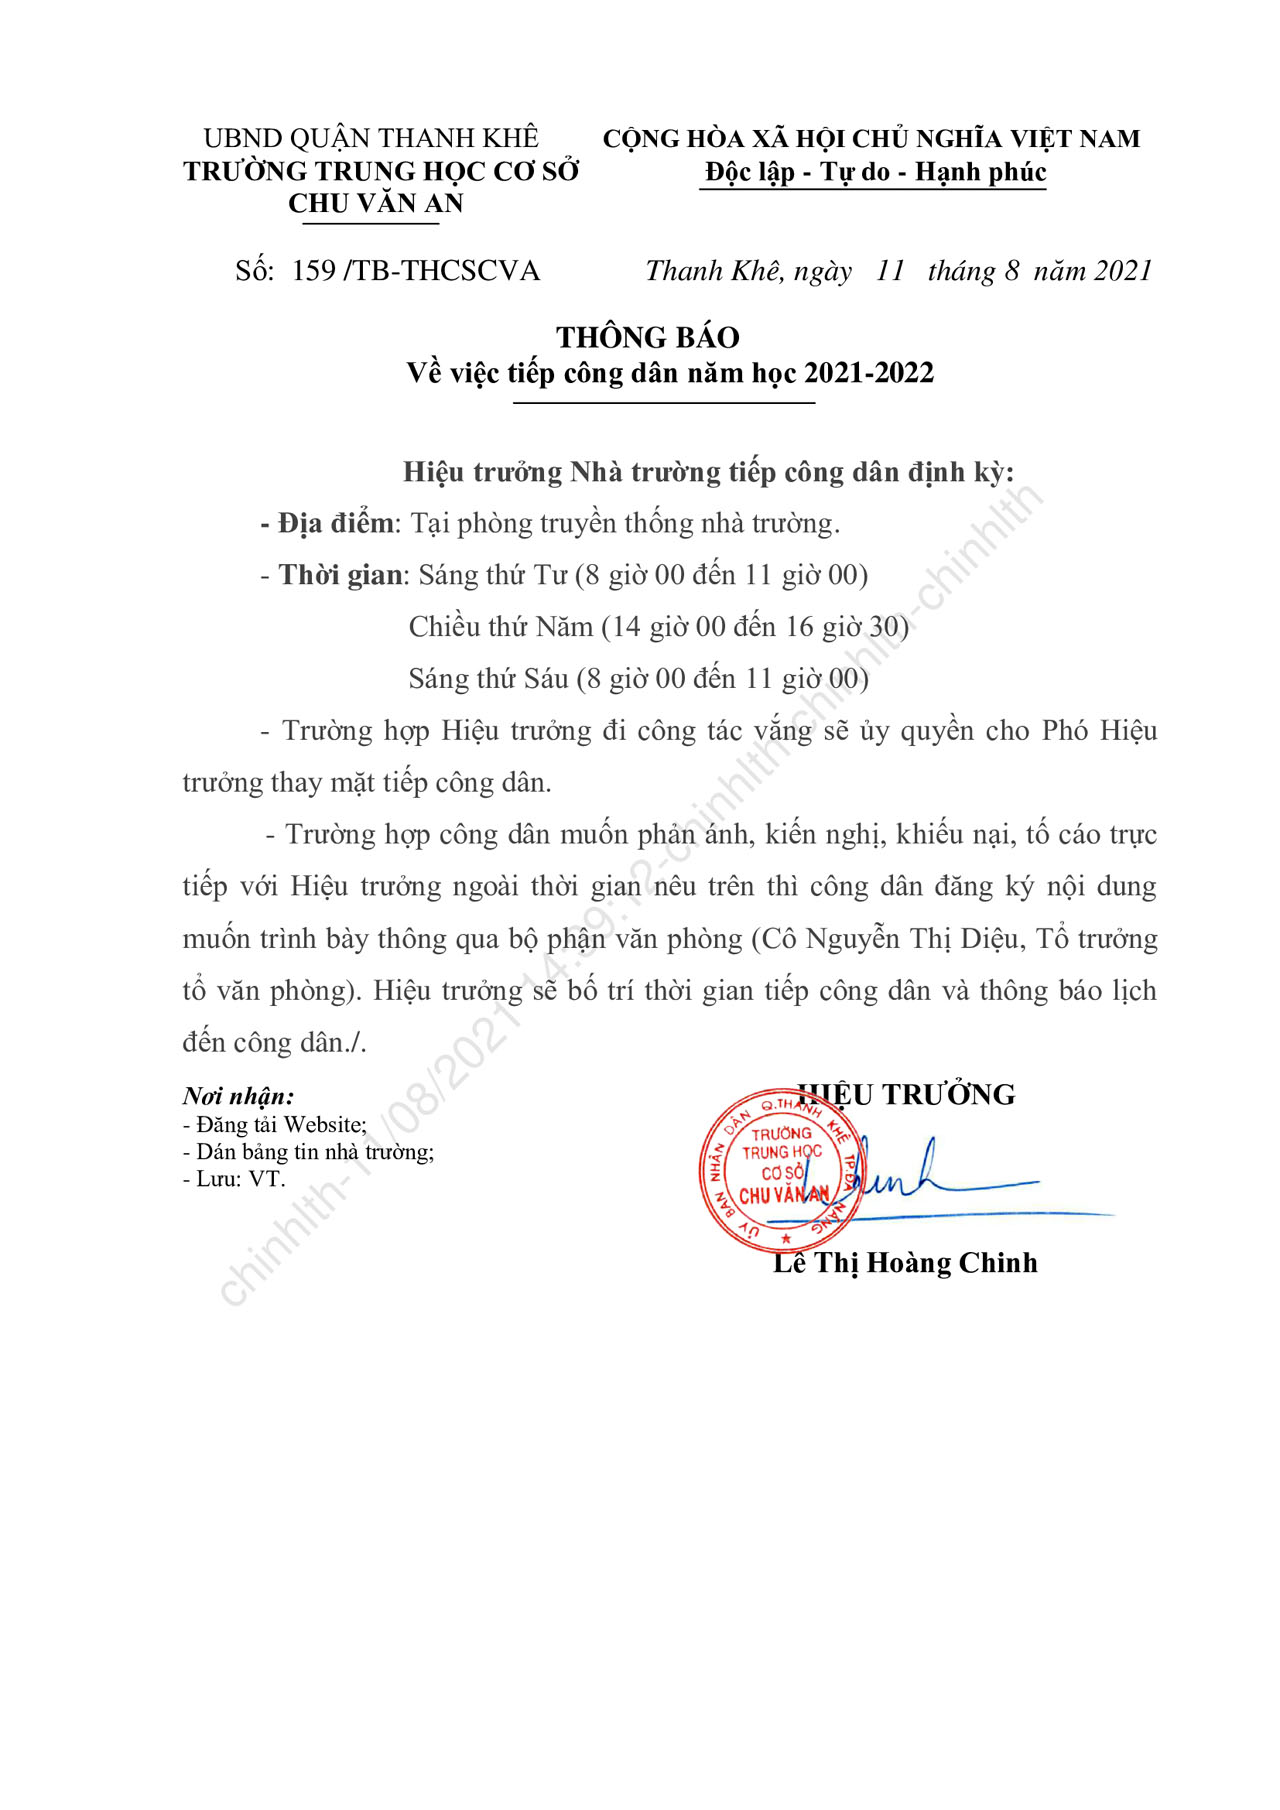 159.TB THCSCVA.THONG BAO TIEP CONG DAN